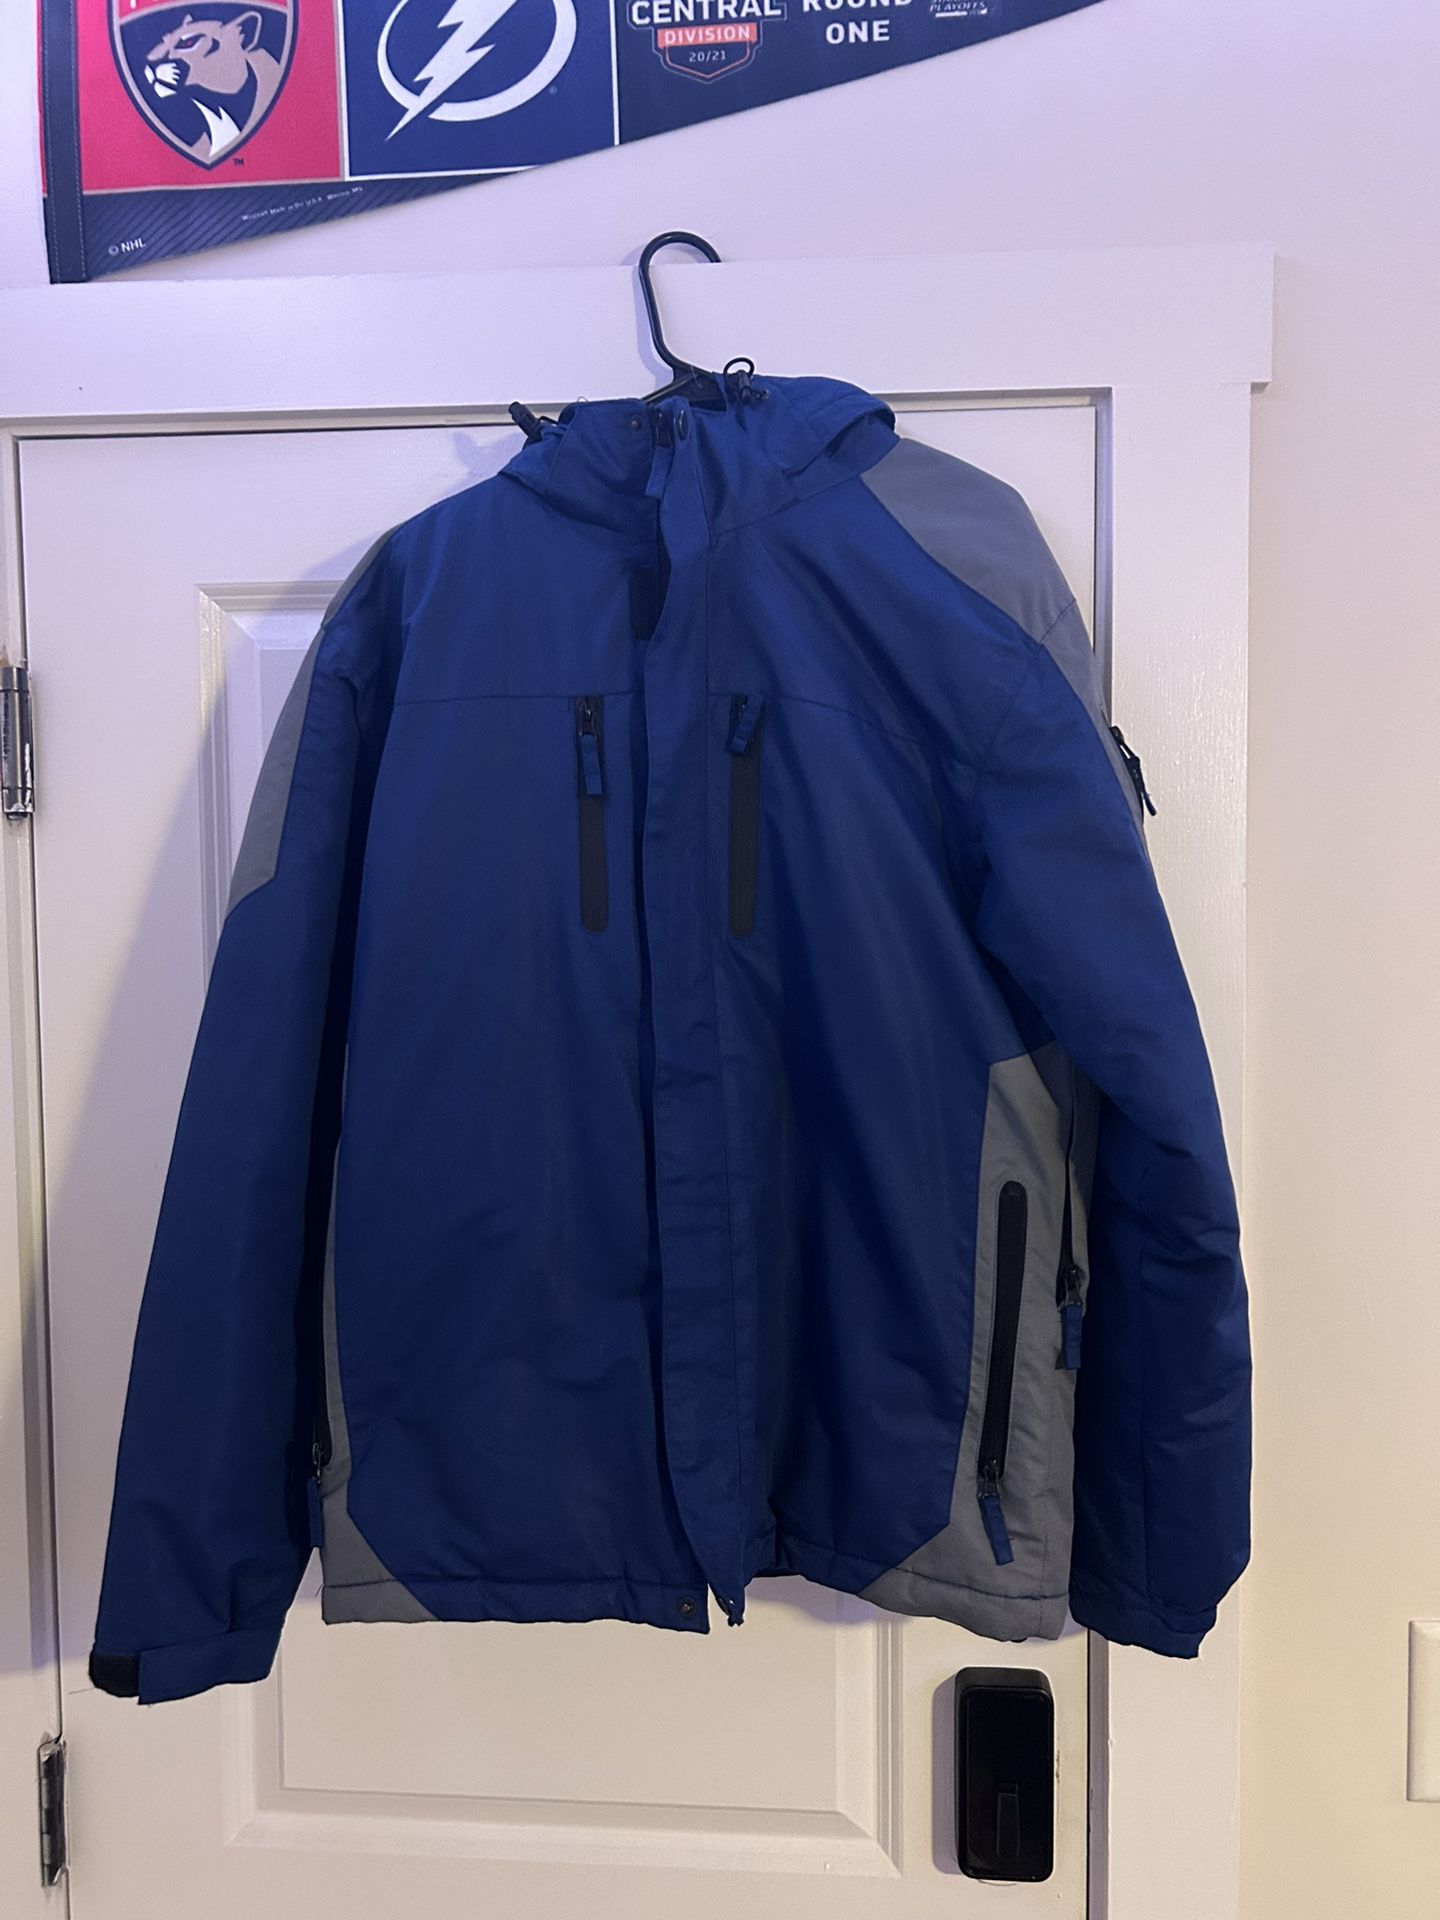 Excellent Condition Iceburg Brand Men’s Size Medium Warm Winter Ski/Snowboard Jacket